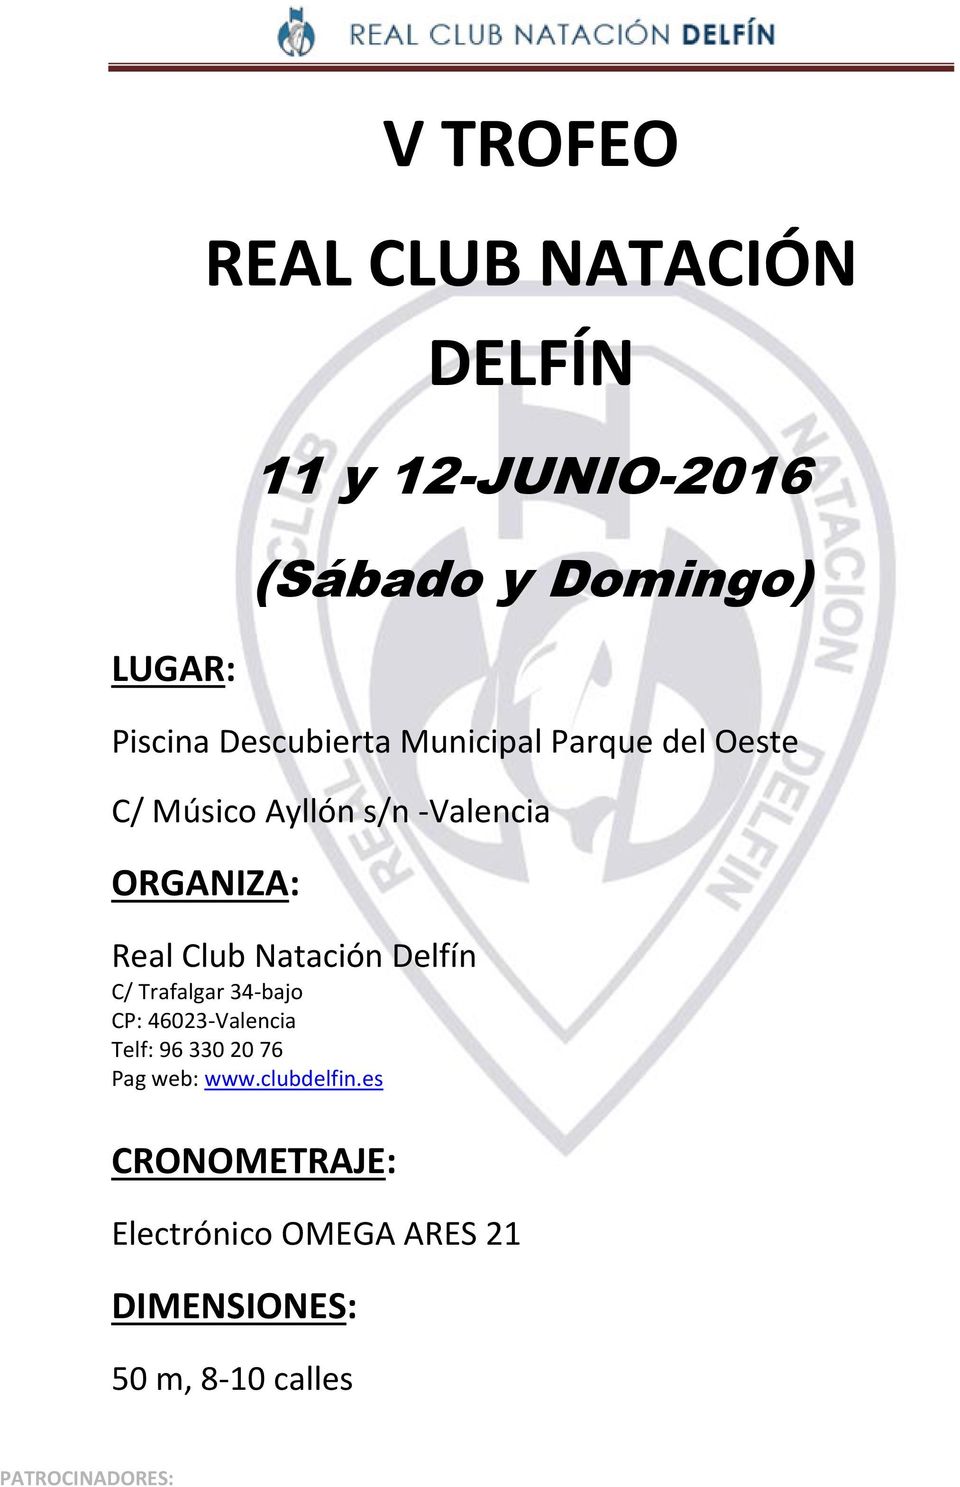 Club Natación Delfín C/ Trafalgar 34-bajo CP: 46023-Valencia Telf: 96 330 20 76 Pag